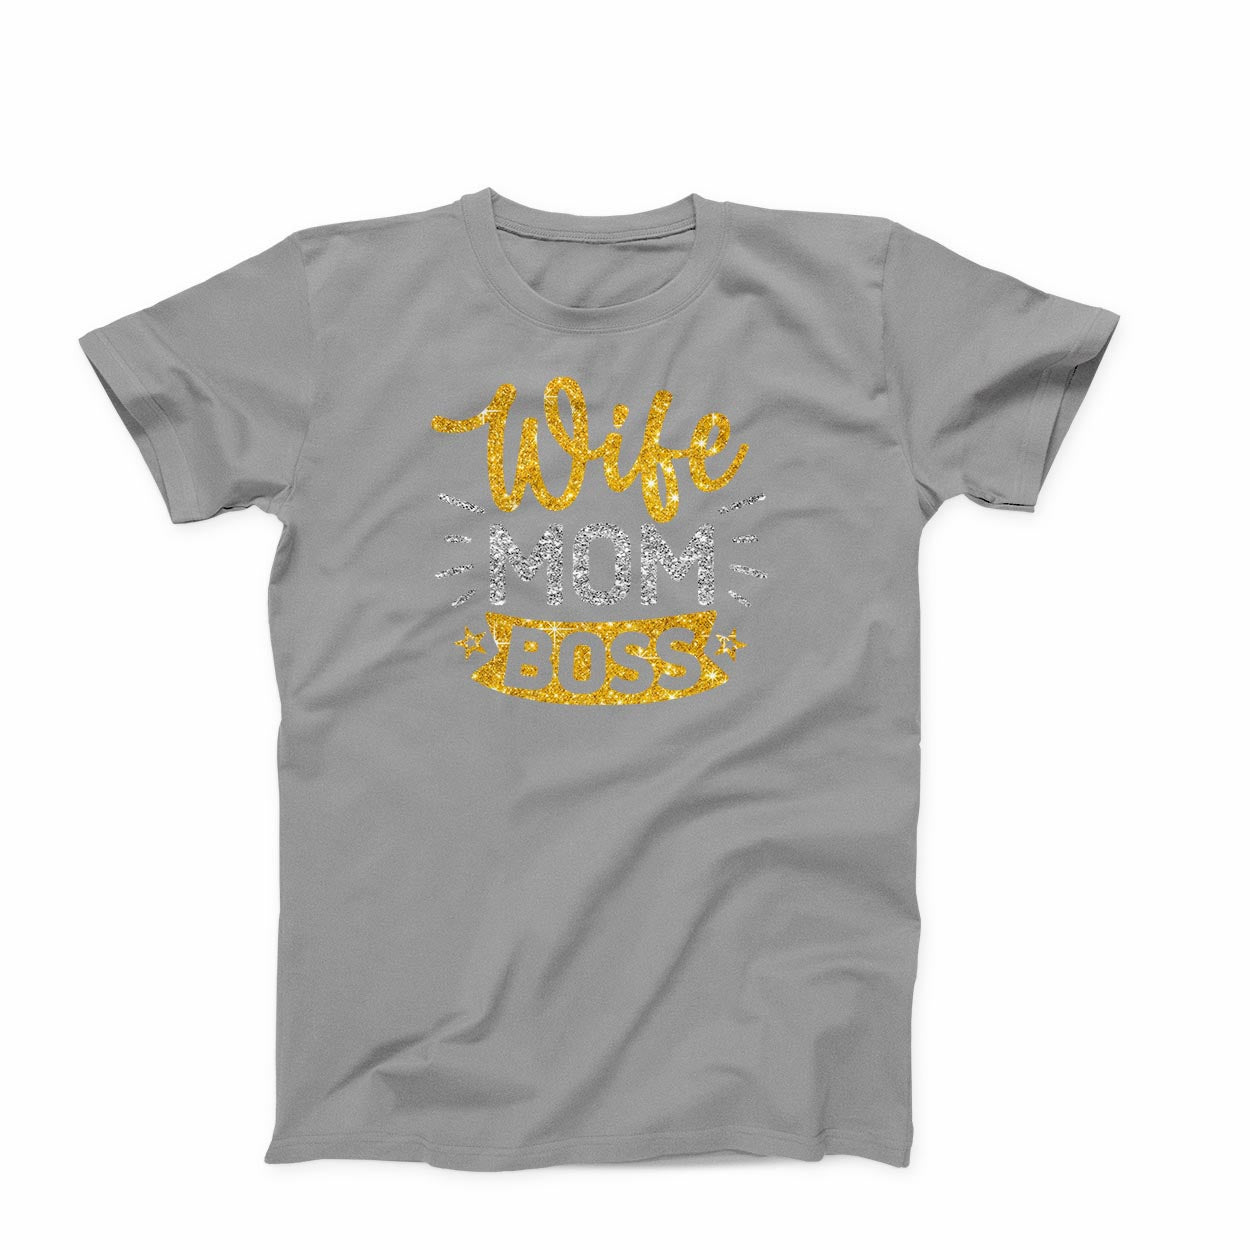 T-shirt:  Wife, Mom, Boss (Glitter)